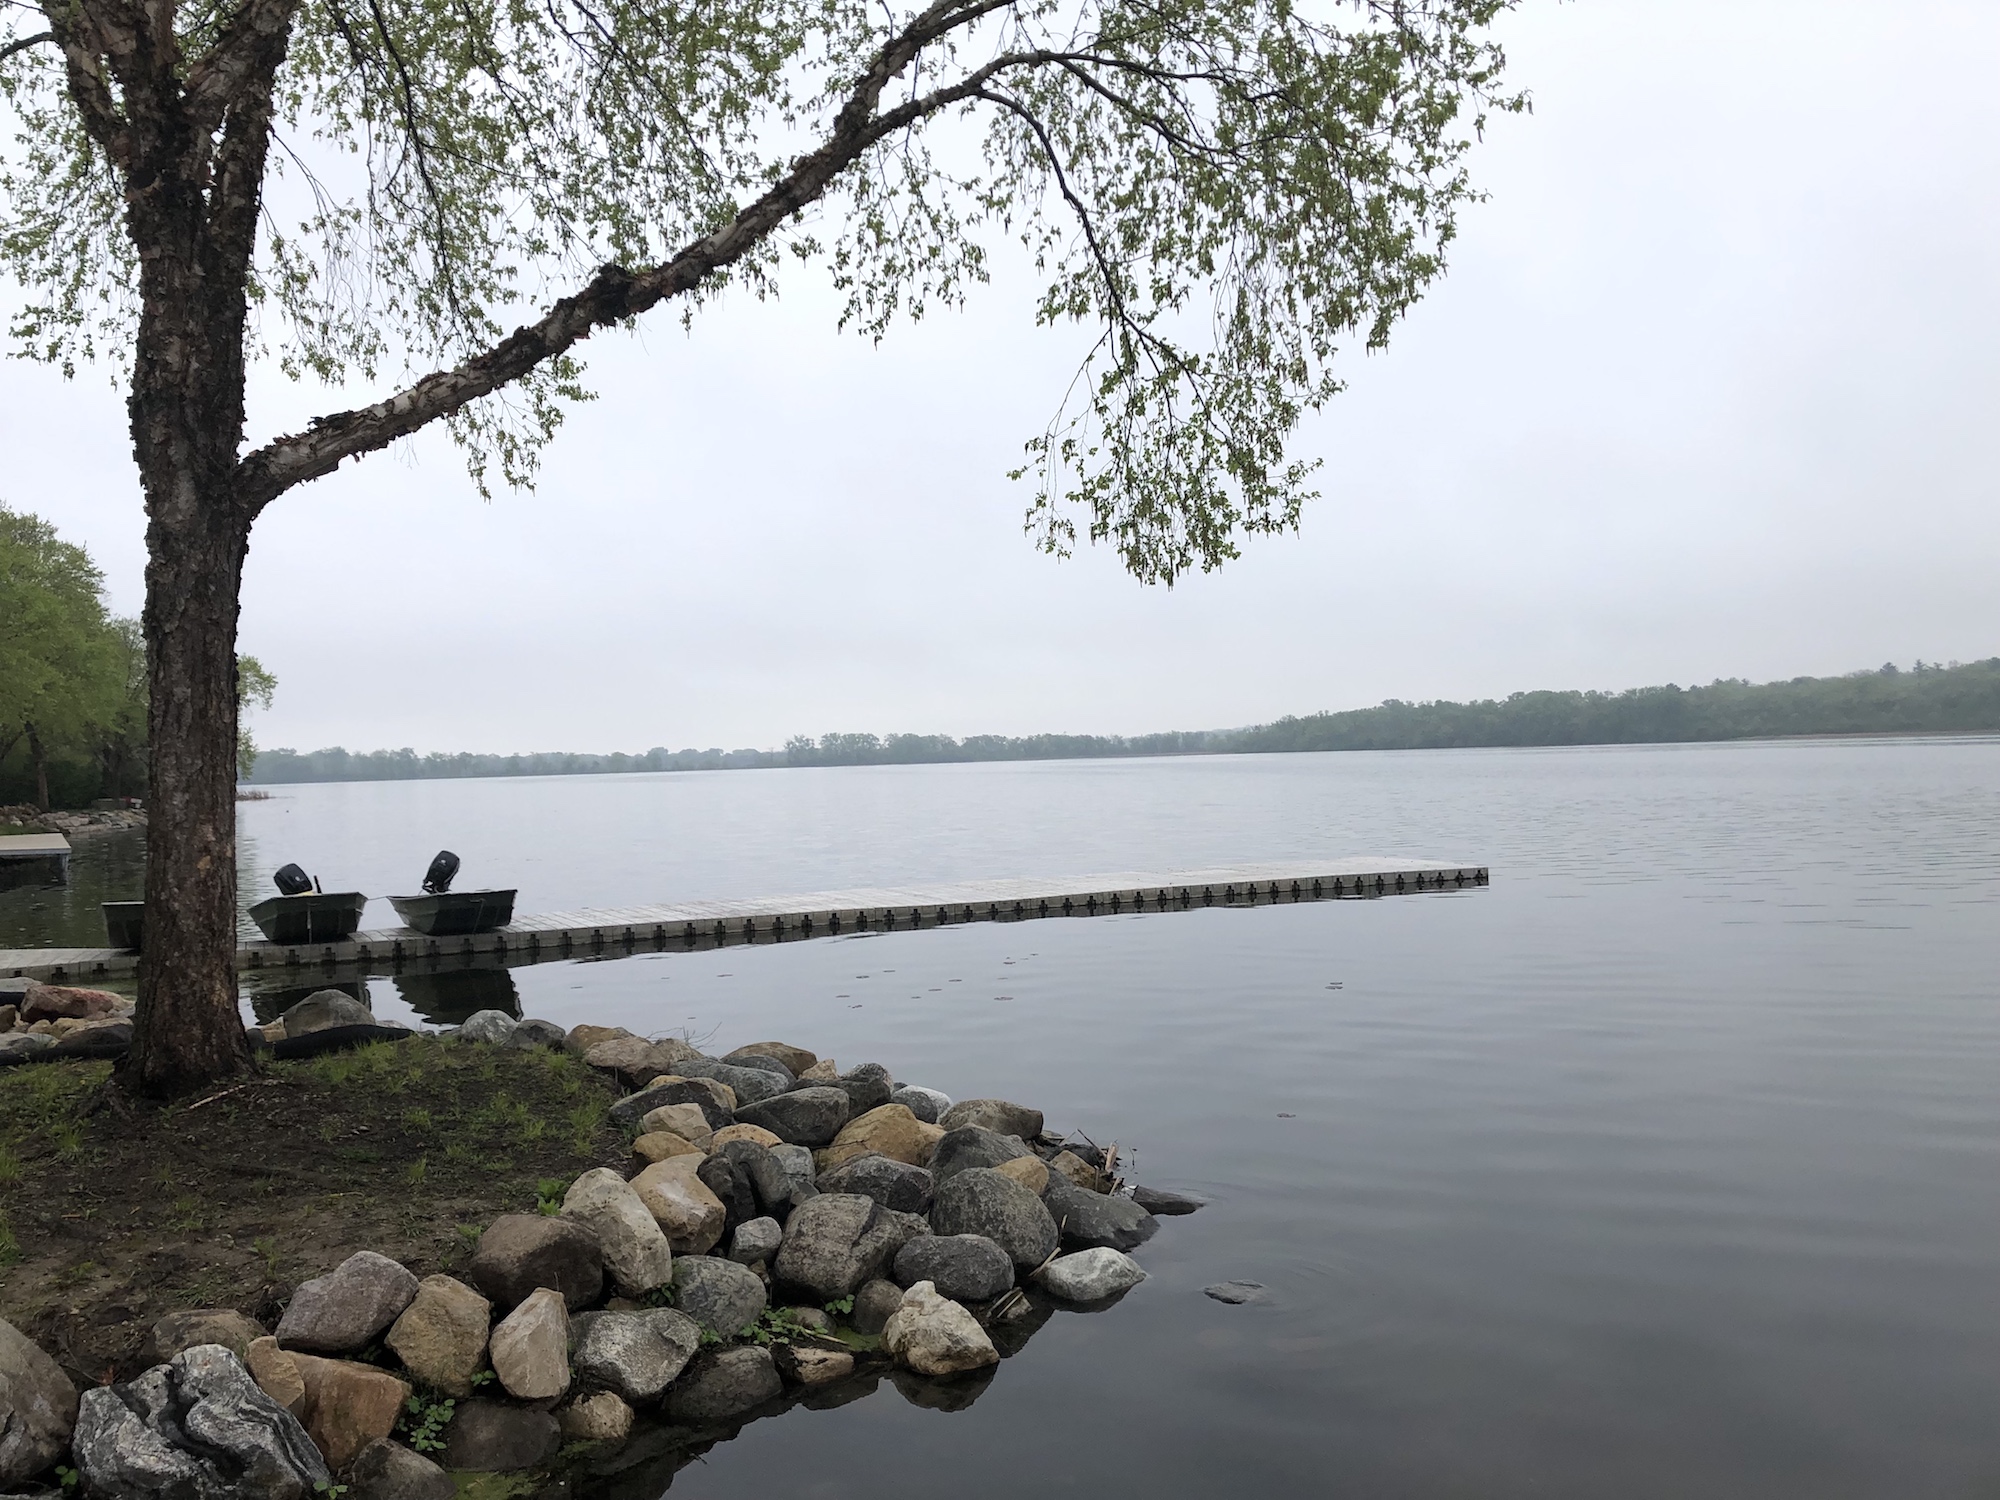 Lake Wingra on May 19, 2019.